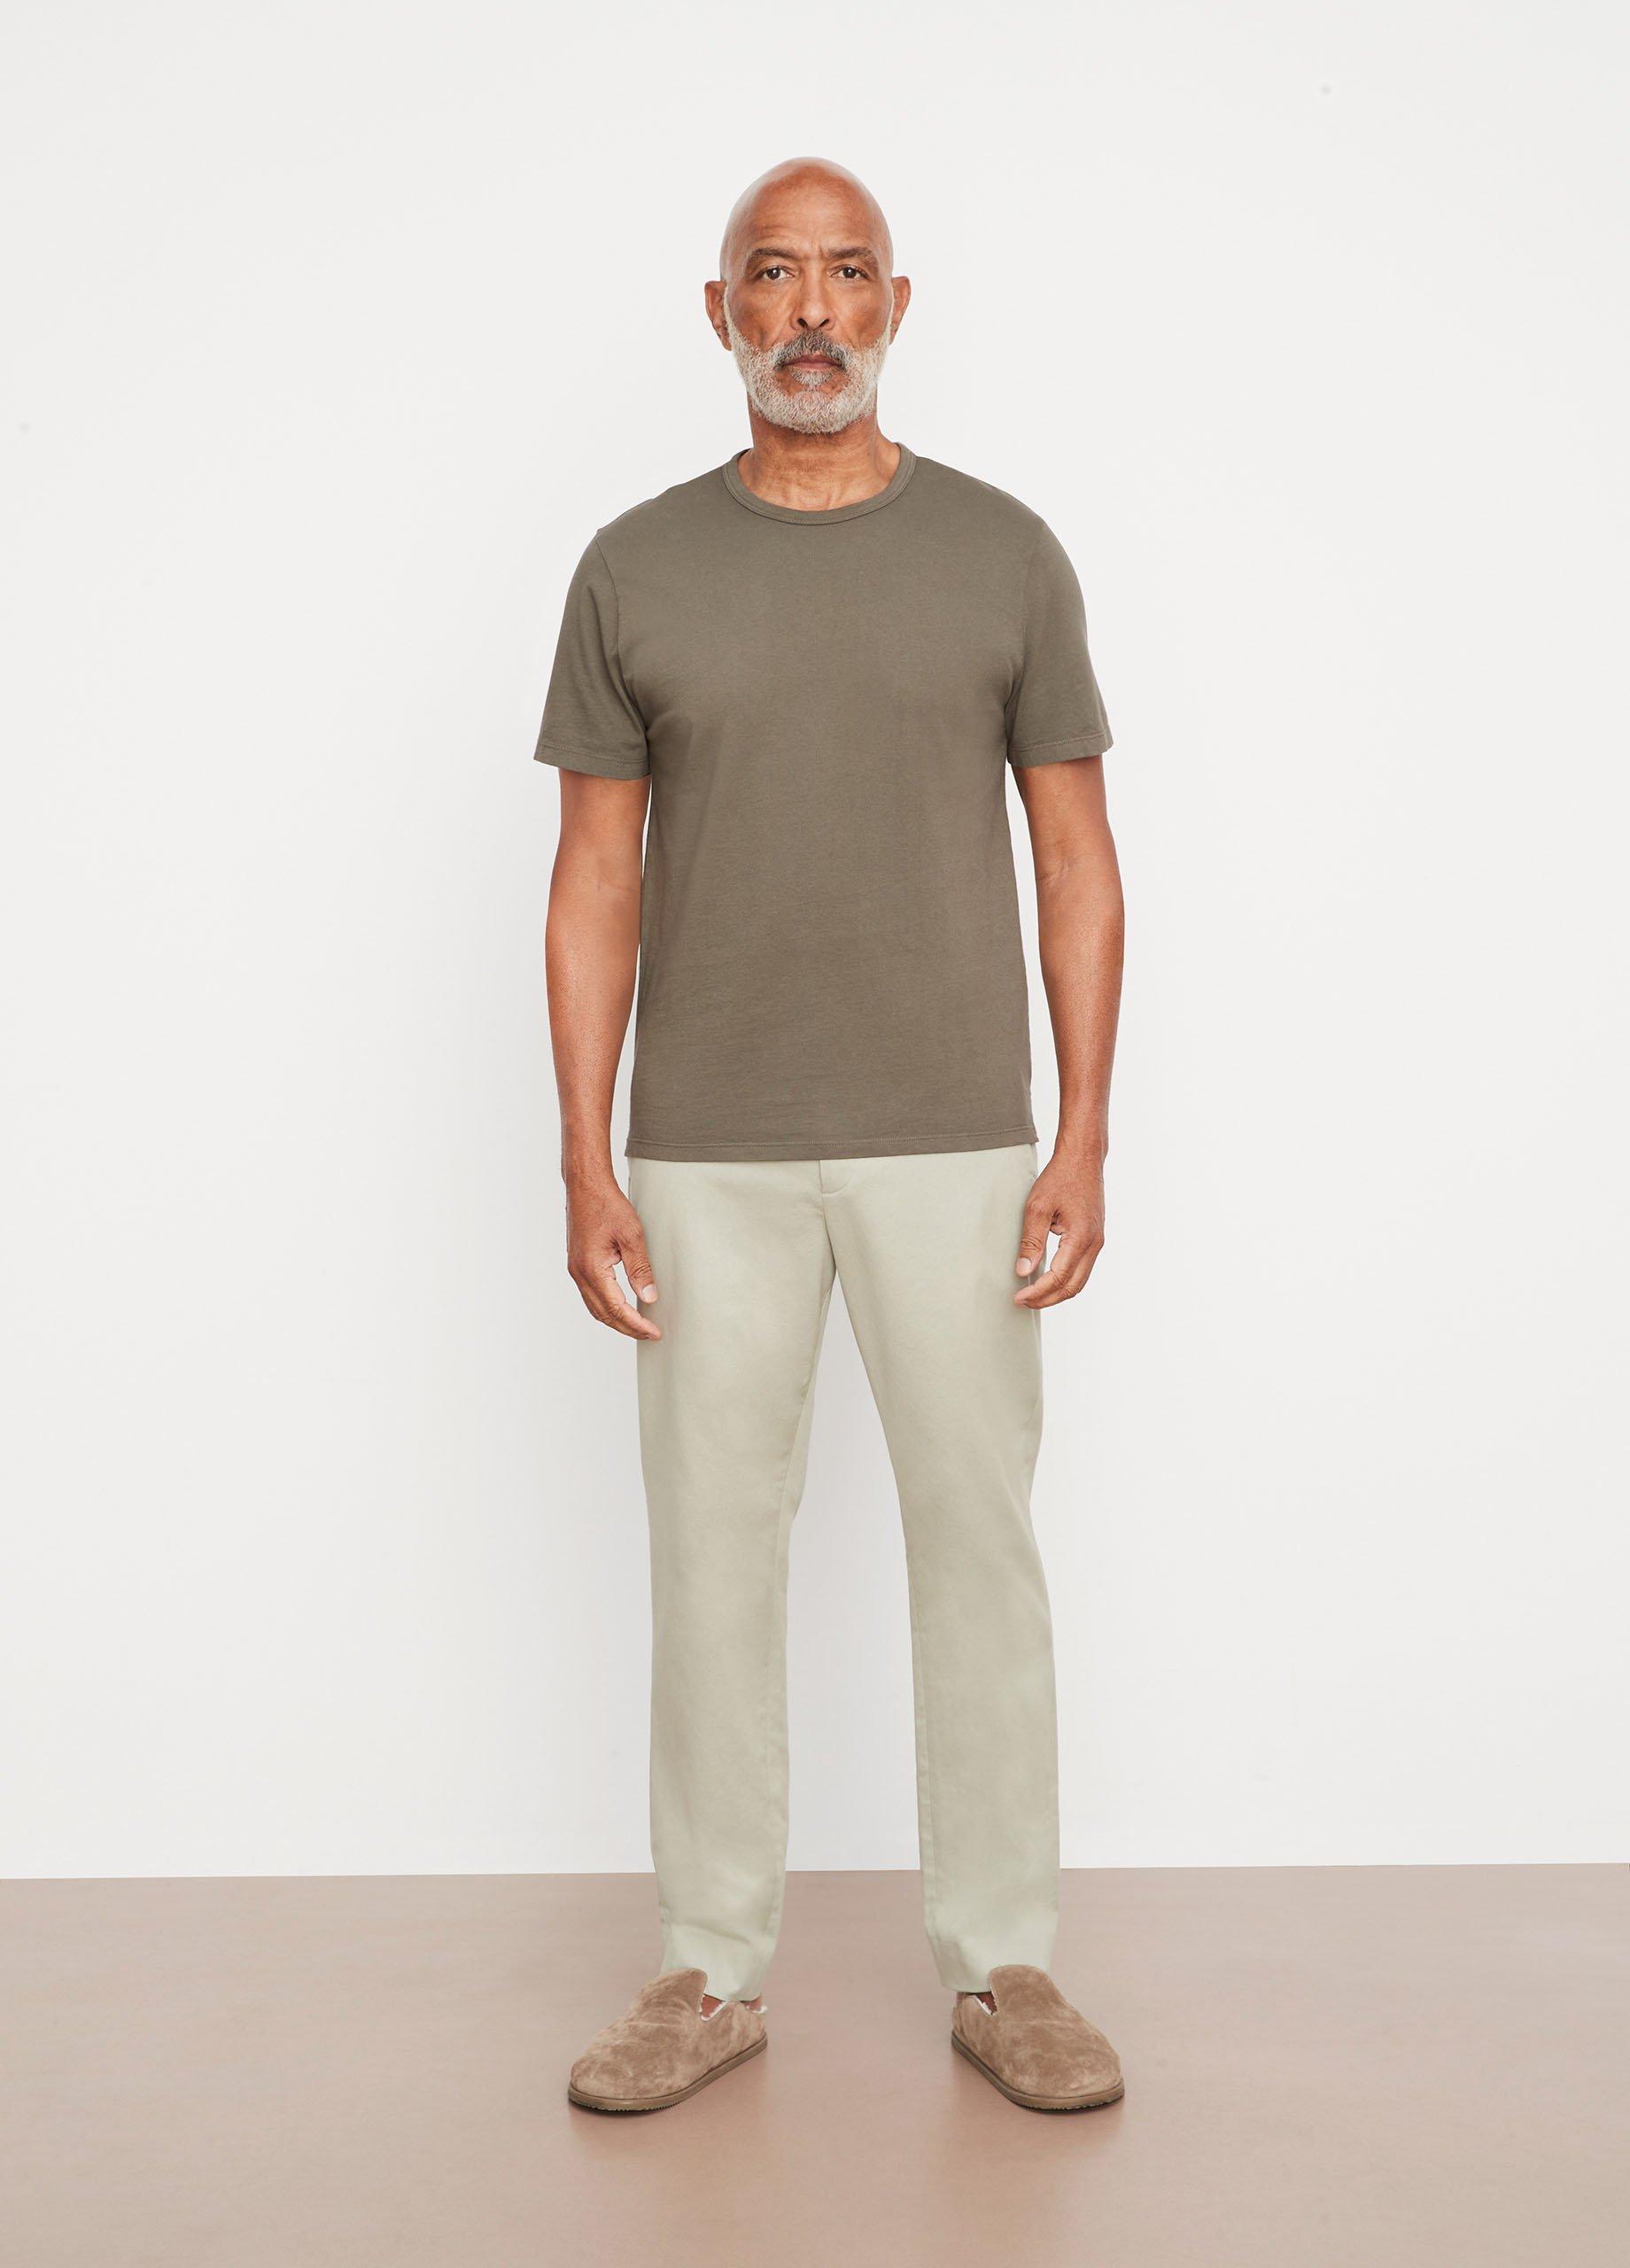 Vince Garment Dye Short Sleeve T-Shirt, Green, Size M Vince